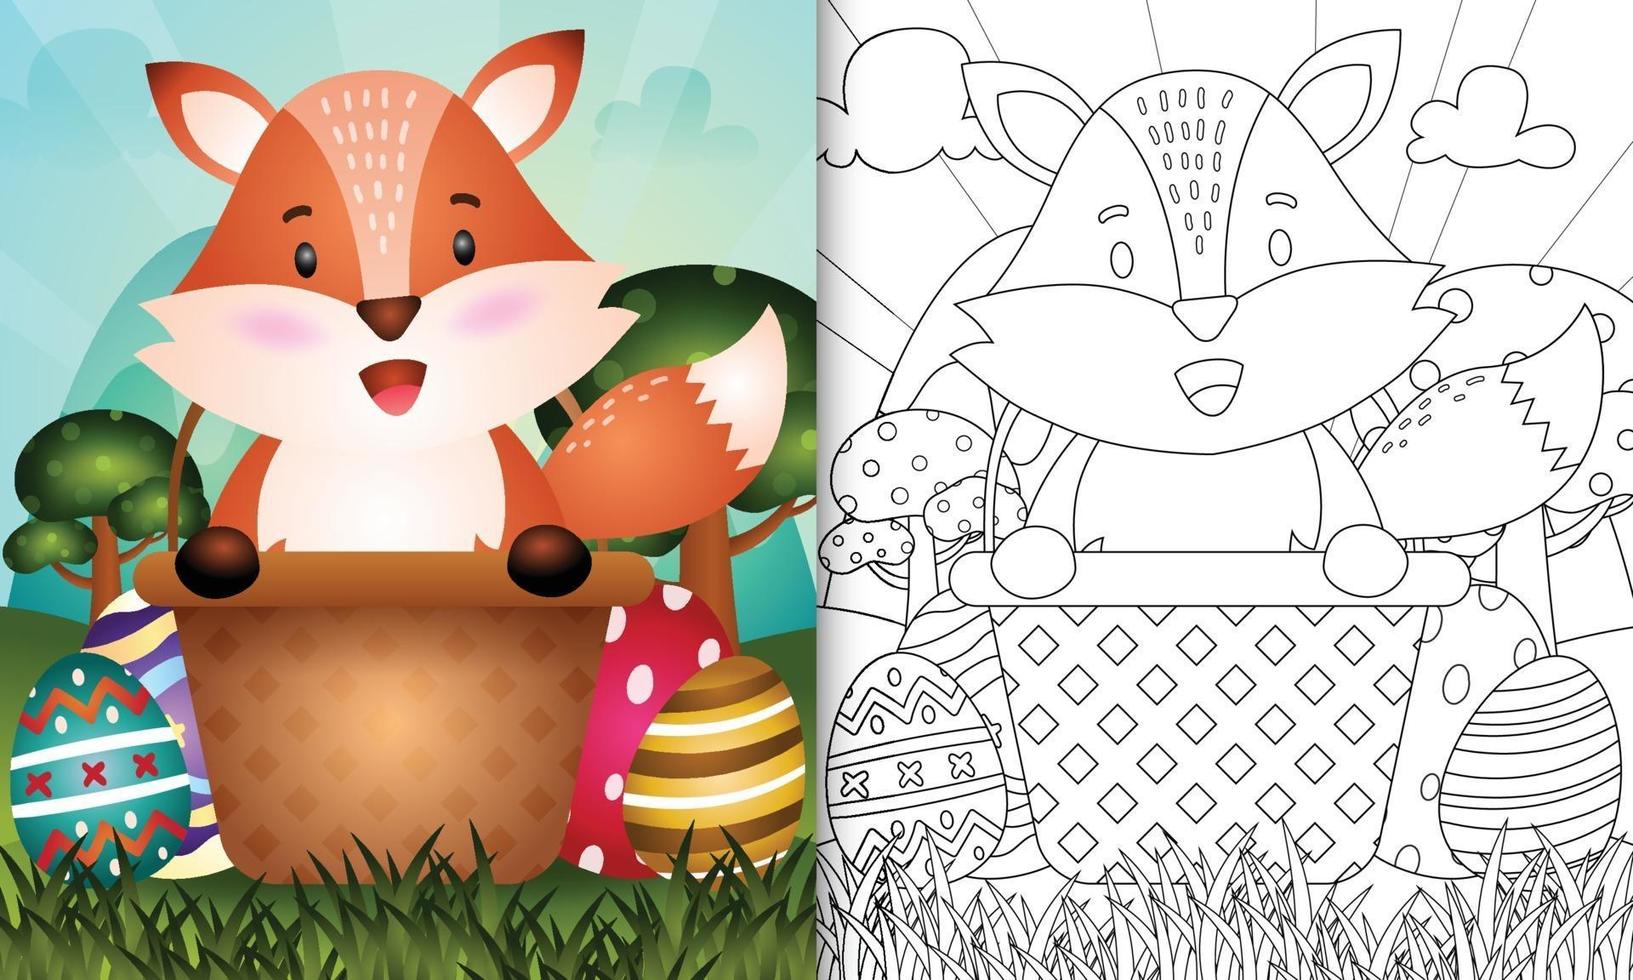 Livre de coloriage pour les enfants sur le thème de joyeuses pâques avec illustration de personnage d'un renard mignon dans l'oeuf de seau vecteur